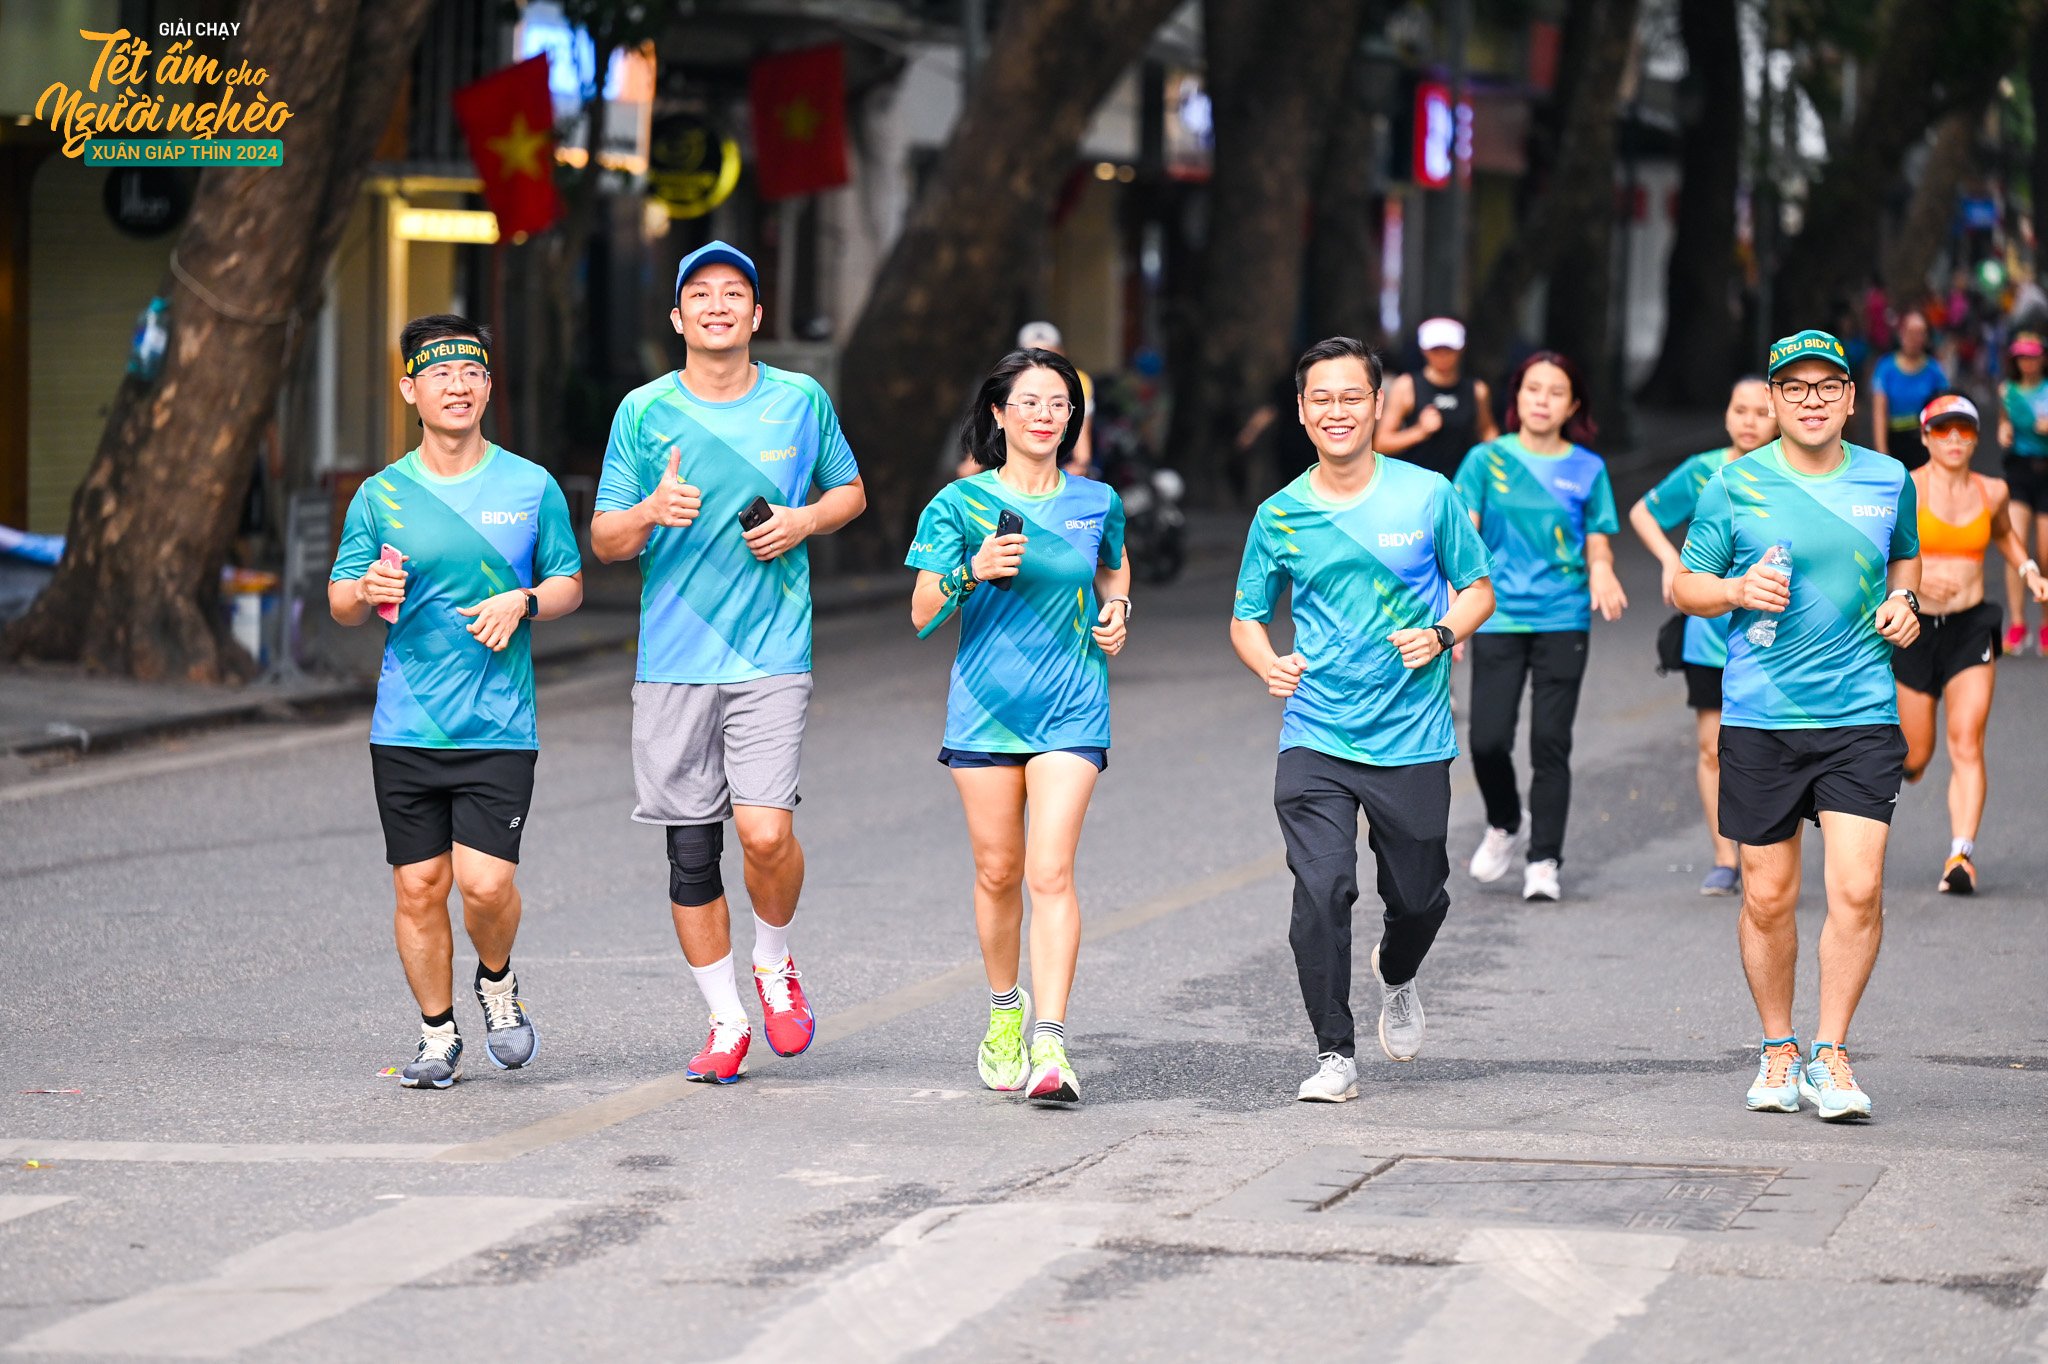 Giải chạy Tết ấm cho người nghèo Xuân Giáp Thìn thu hút gần 40 ngàn VĐV tham gia.